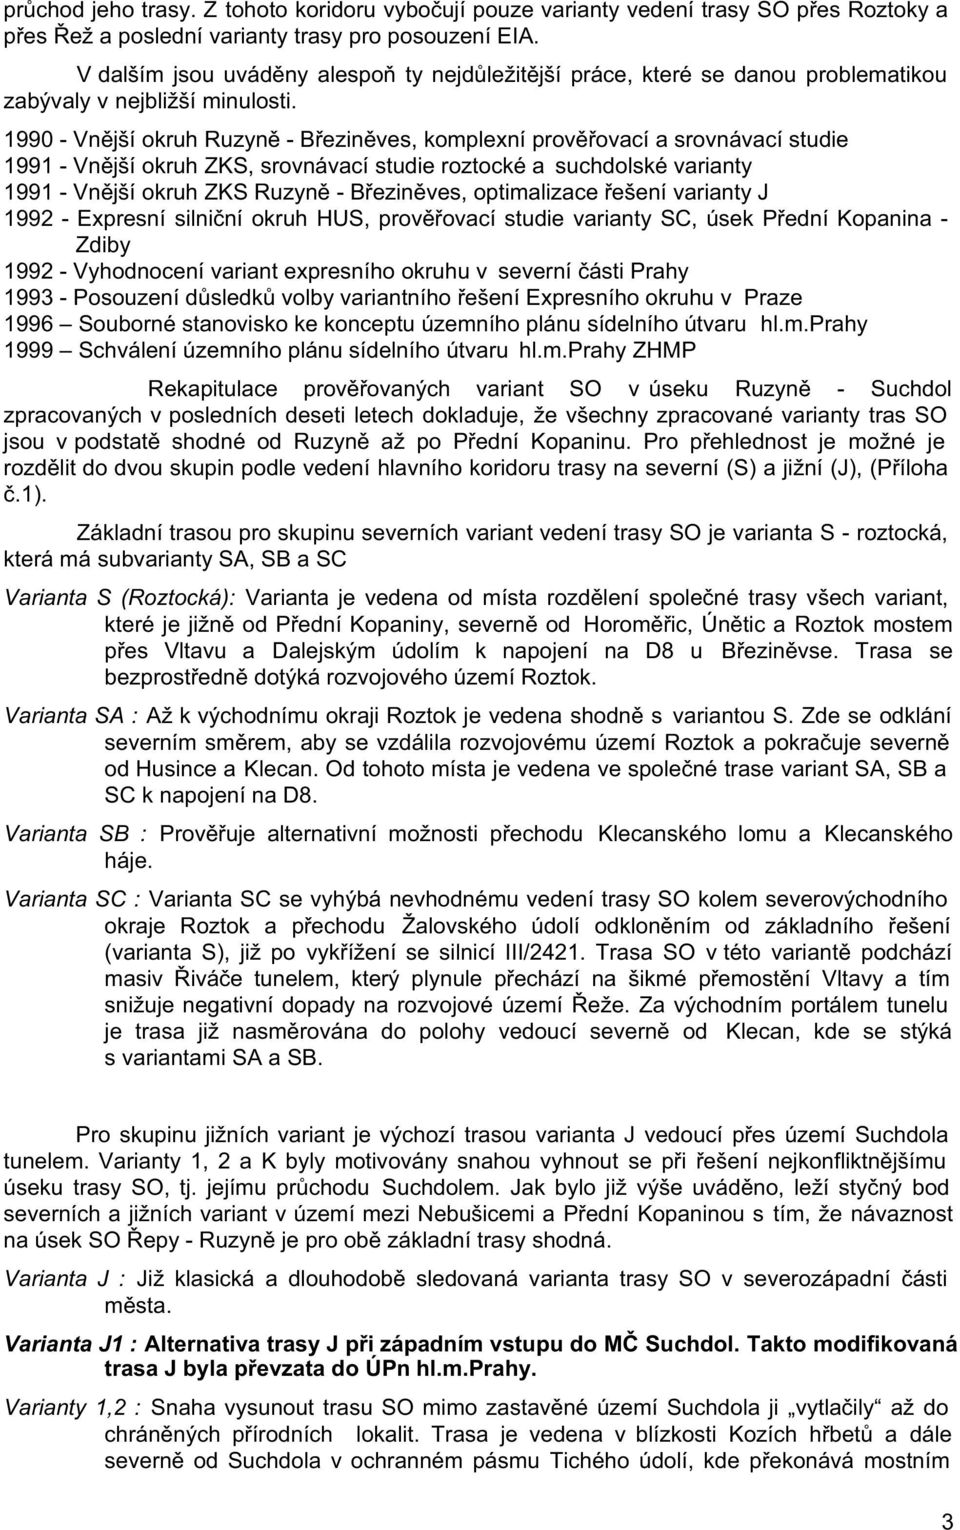 1990 - Vnější okruh Ruzyně - Březiněves, komplexní prověřovací a srovnávací studie 1991 - Vnější okruh ZKS, srovnávací studie roztocké a suchdolské varianty 1991 - Vnější okruh ZKS Ruzyně -